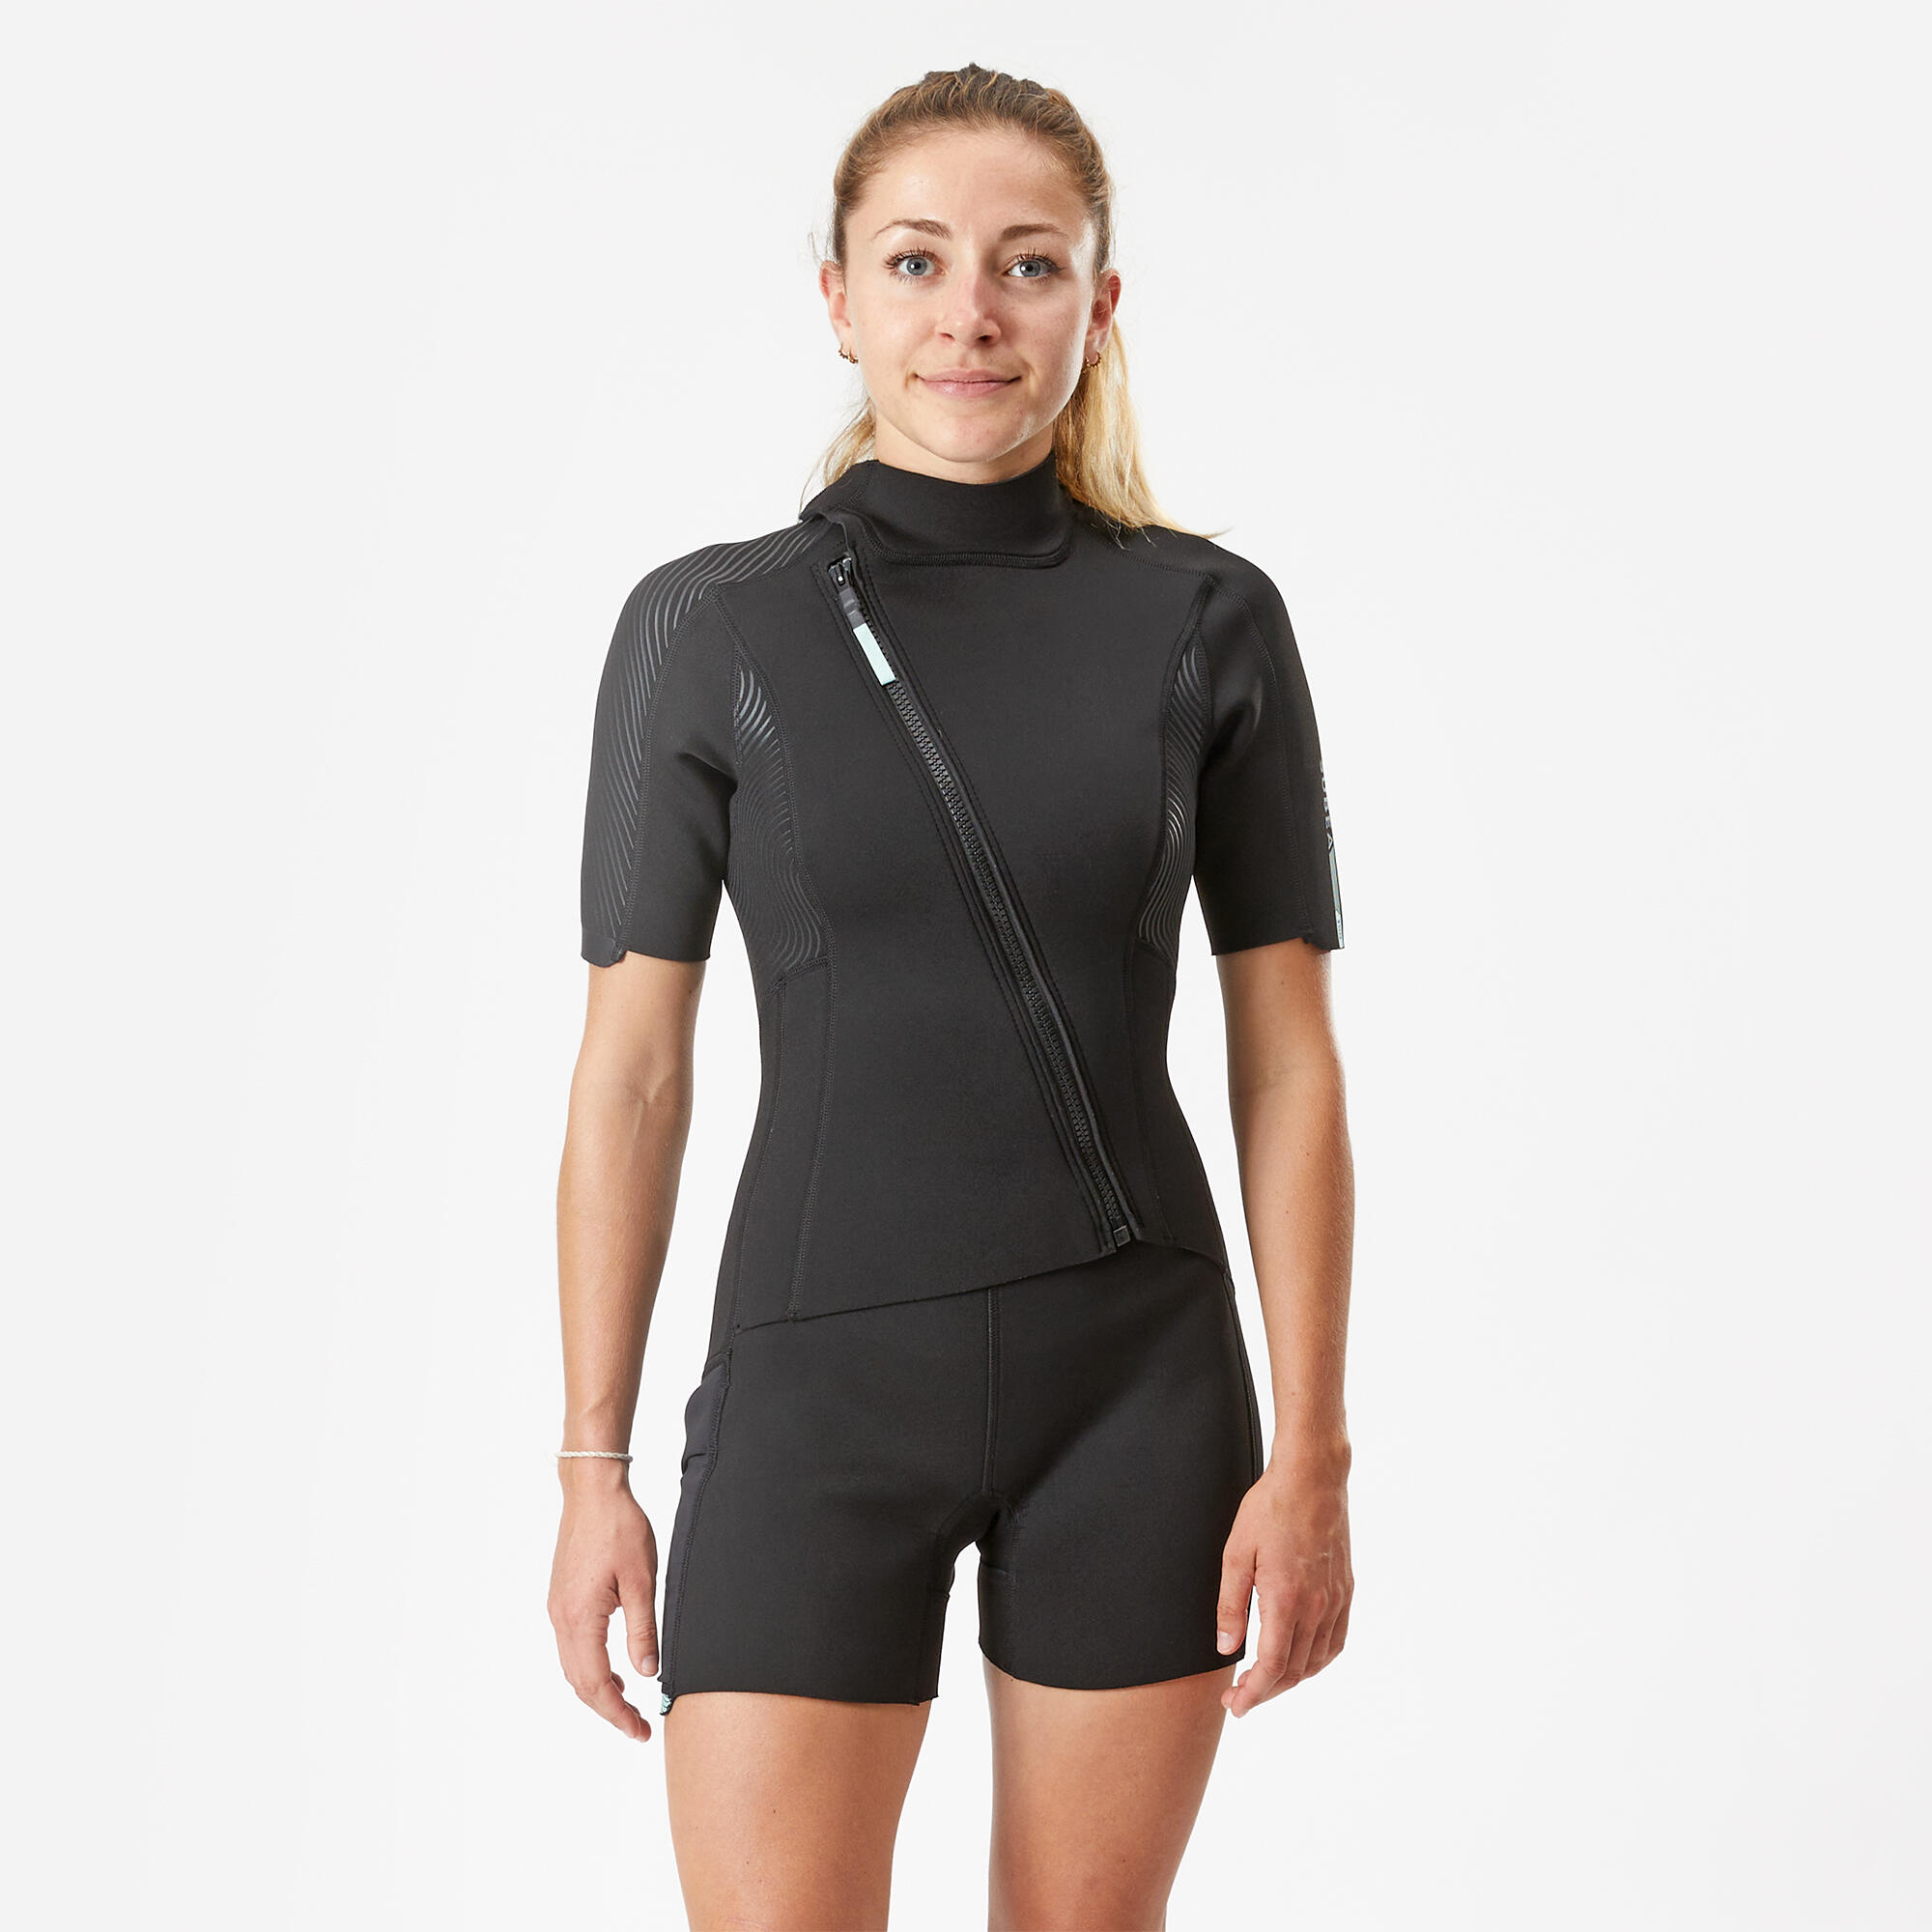 Women's 2 mm neoprene shorty wetsuit with diagonal front zip Easy 2/13